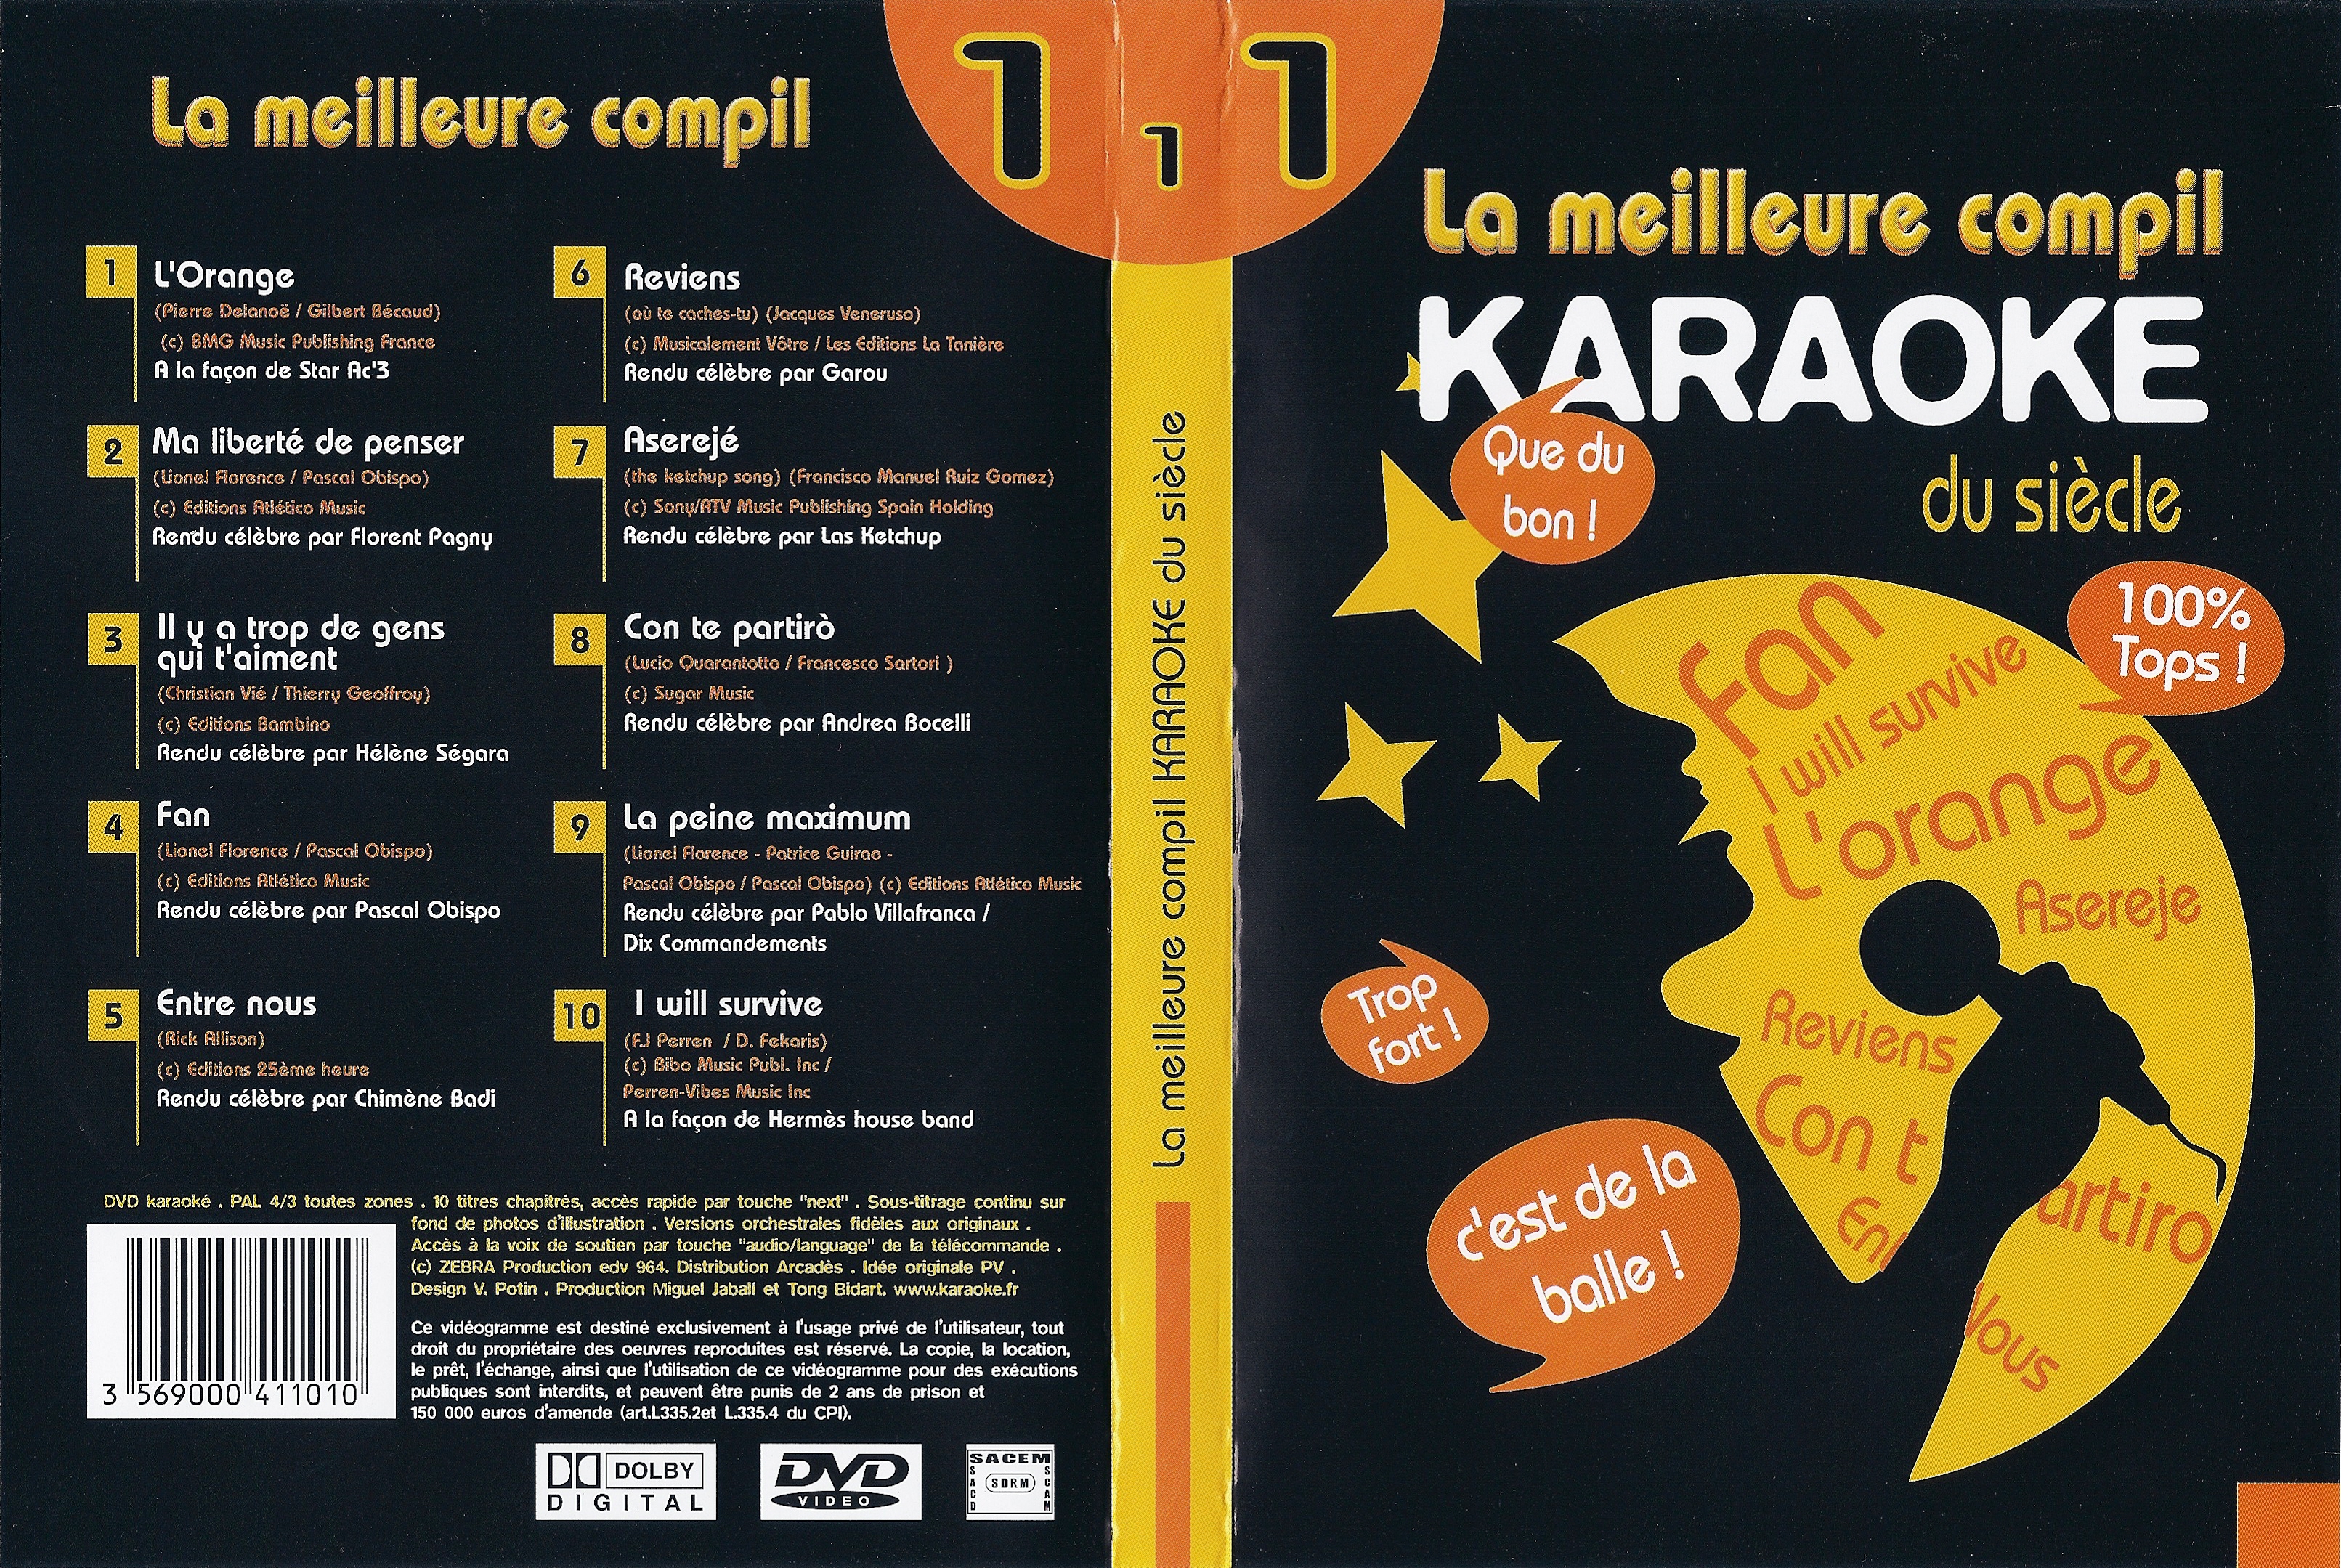 Jaquette DVD La meilleure compil Karaok du siecle vol 01